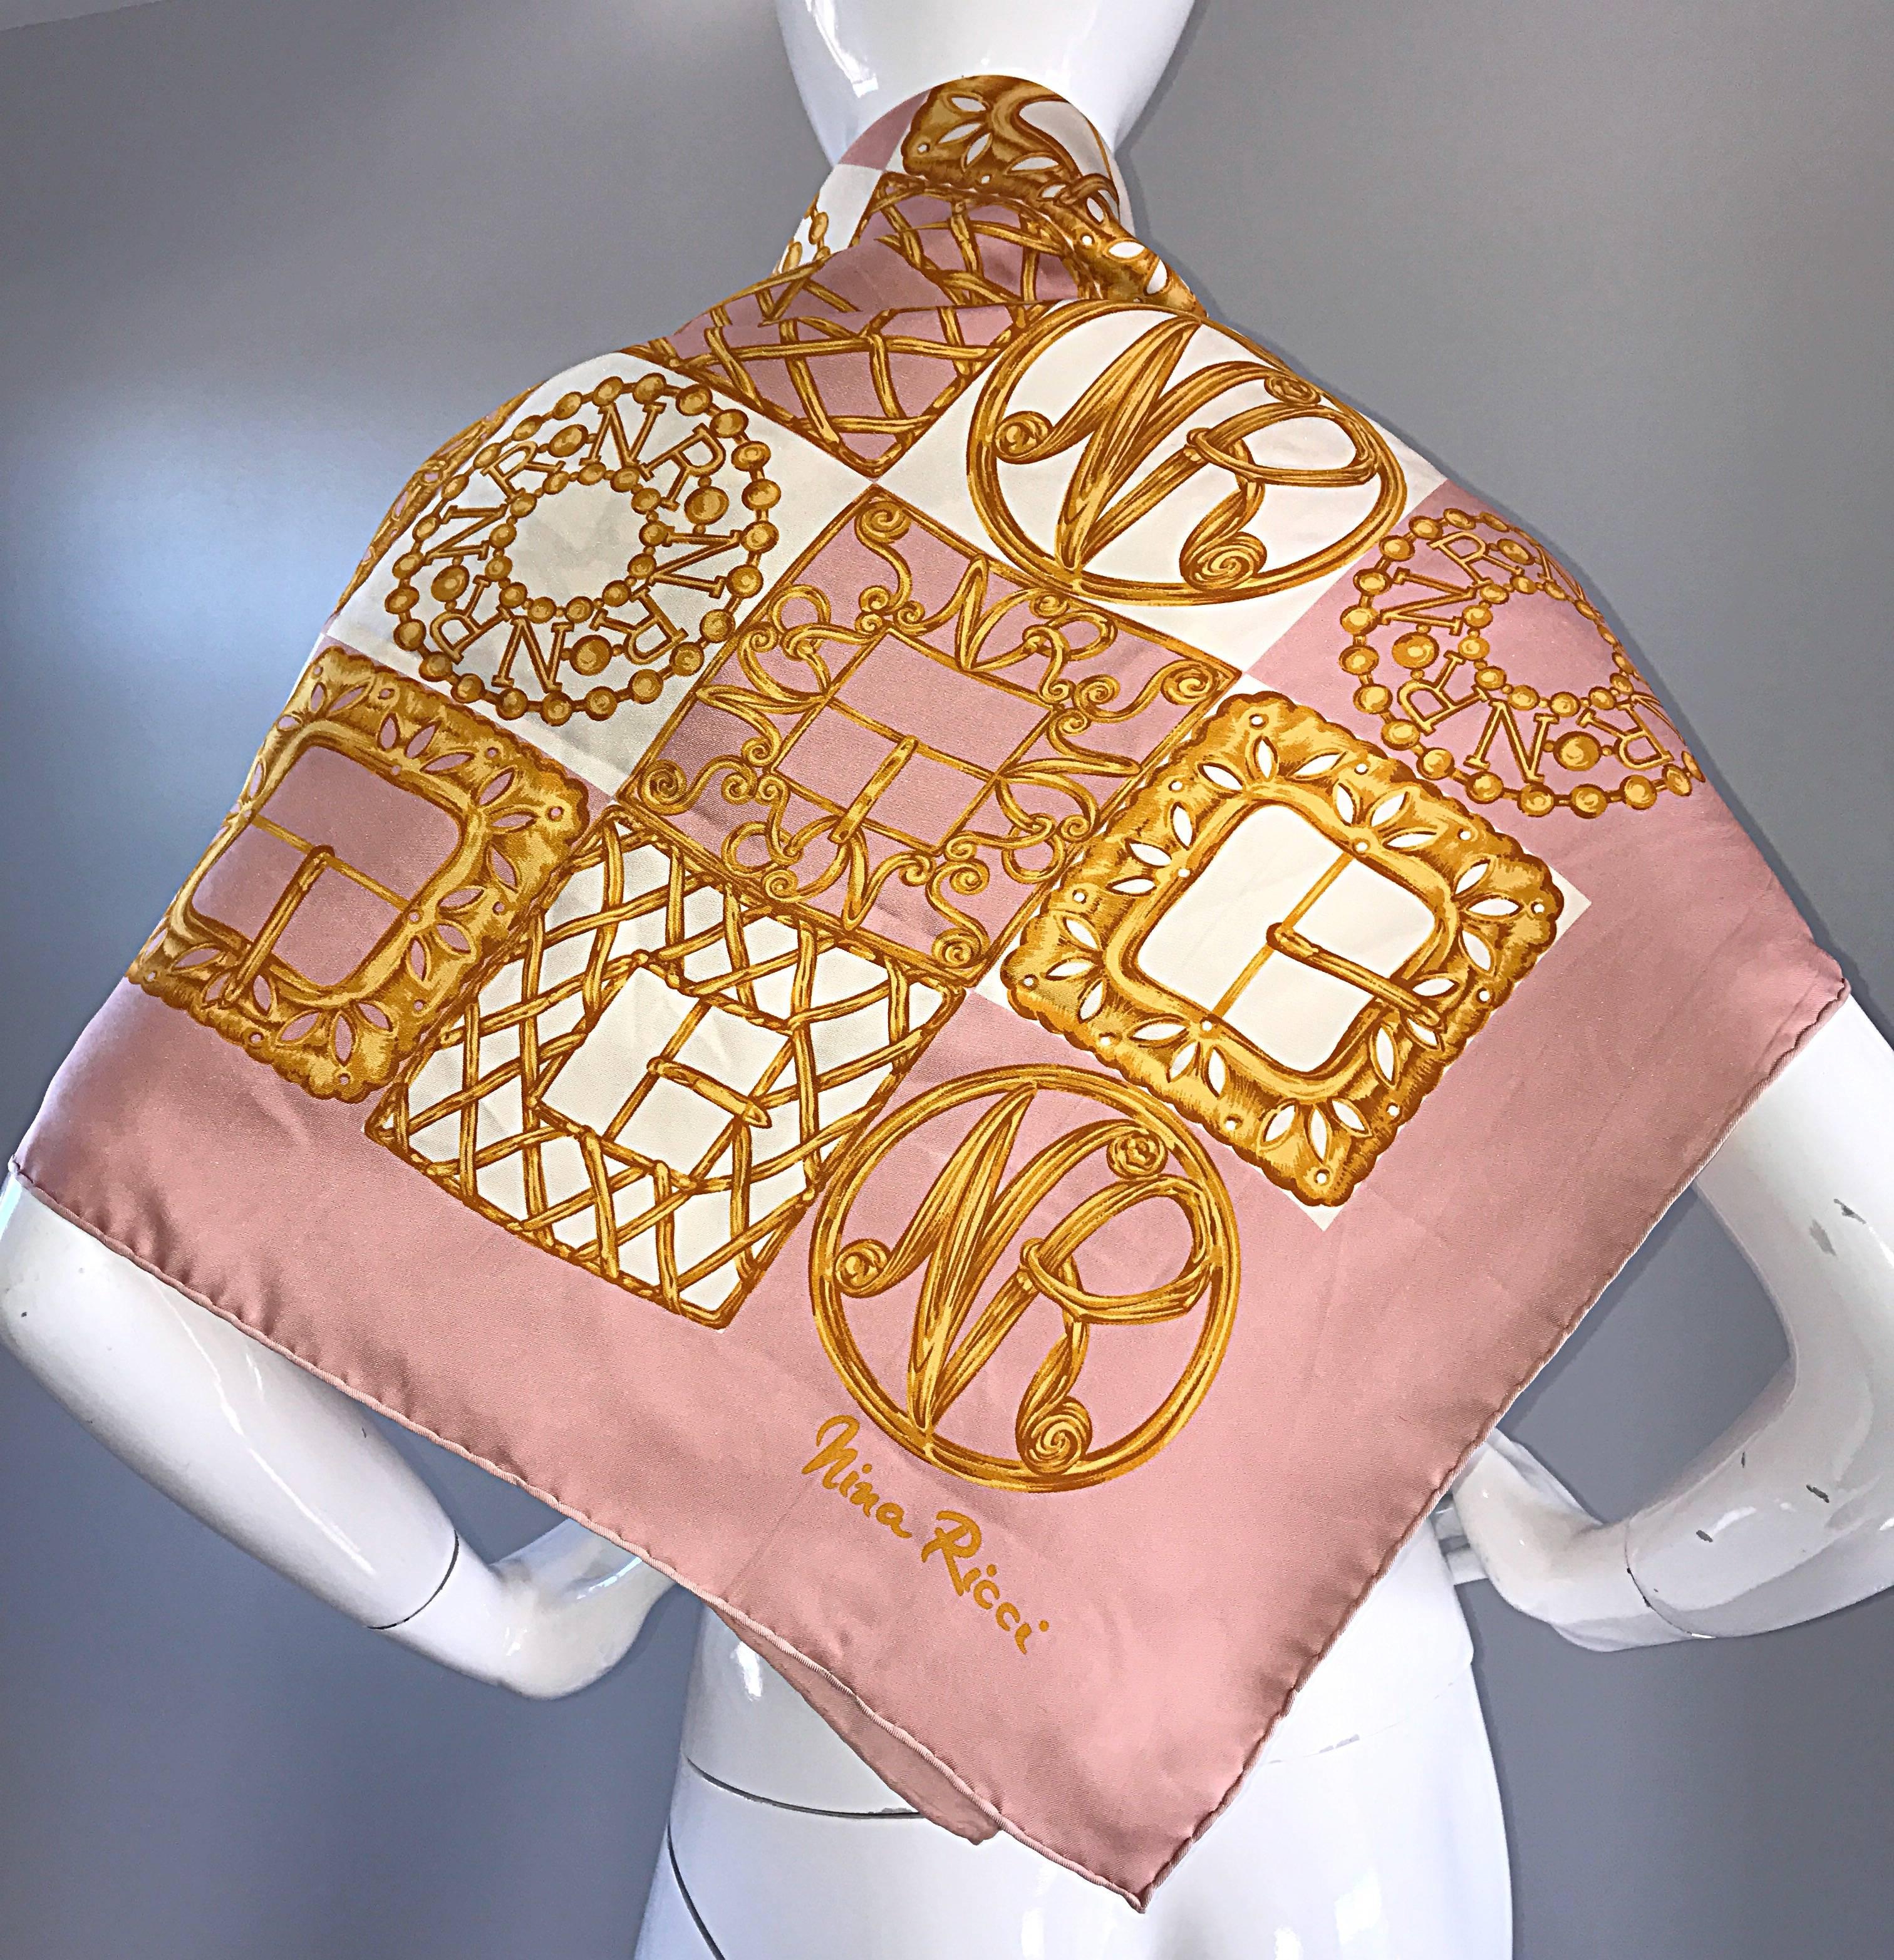 Chic 70s NINA RICCI Couture Seide gerollten Saum Jumbo-Schal oder Schal! Mit durchgehendem rosa, elfenbeinfarbenem und goldenem Signaturdruck. Goldene Schnallen, Logo, etc. Kann auf verschiedene Weise getragen werden (siehe Fotos). In tollem,